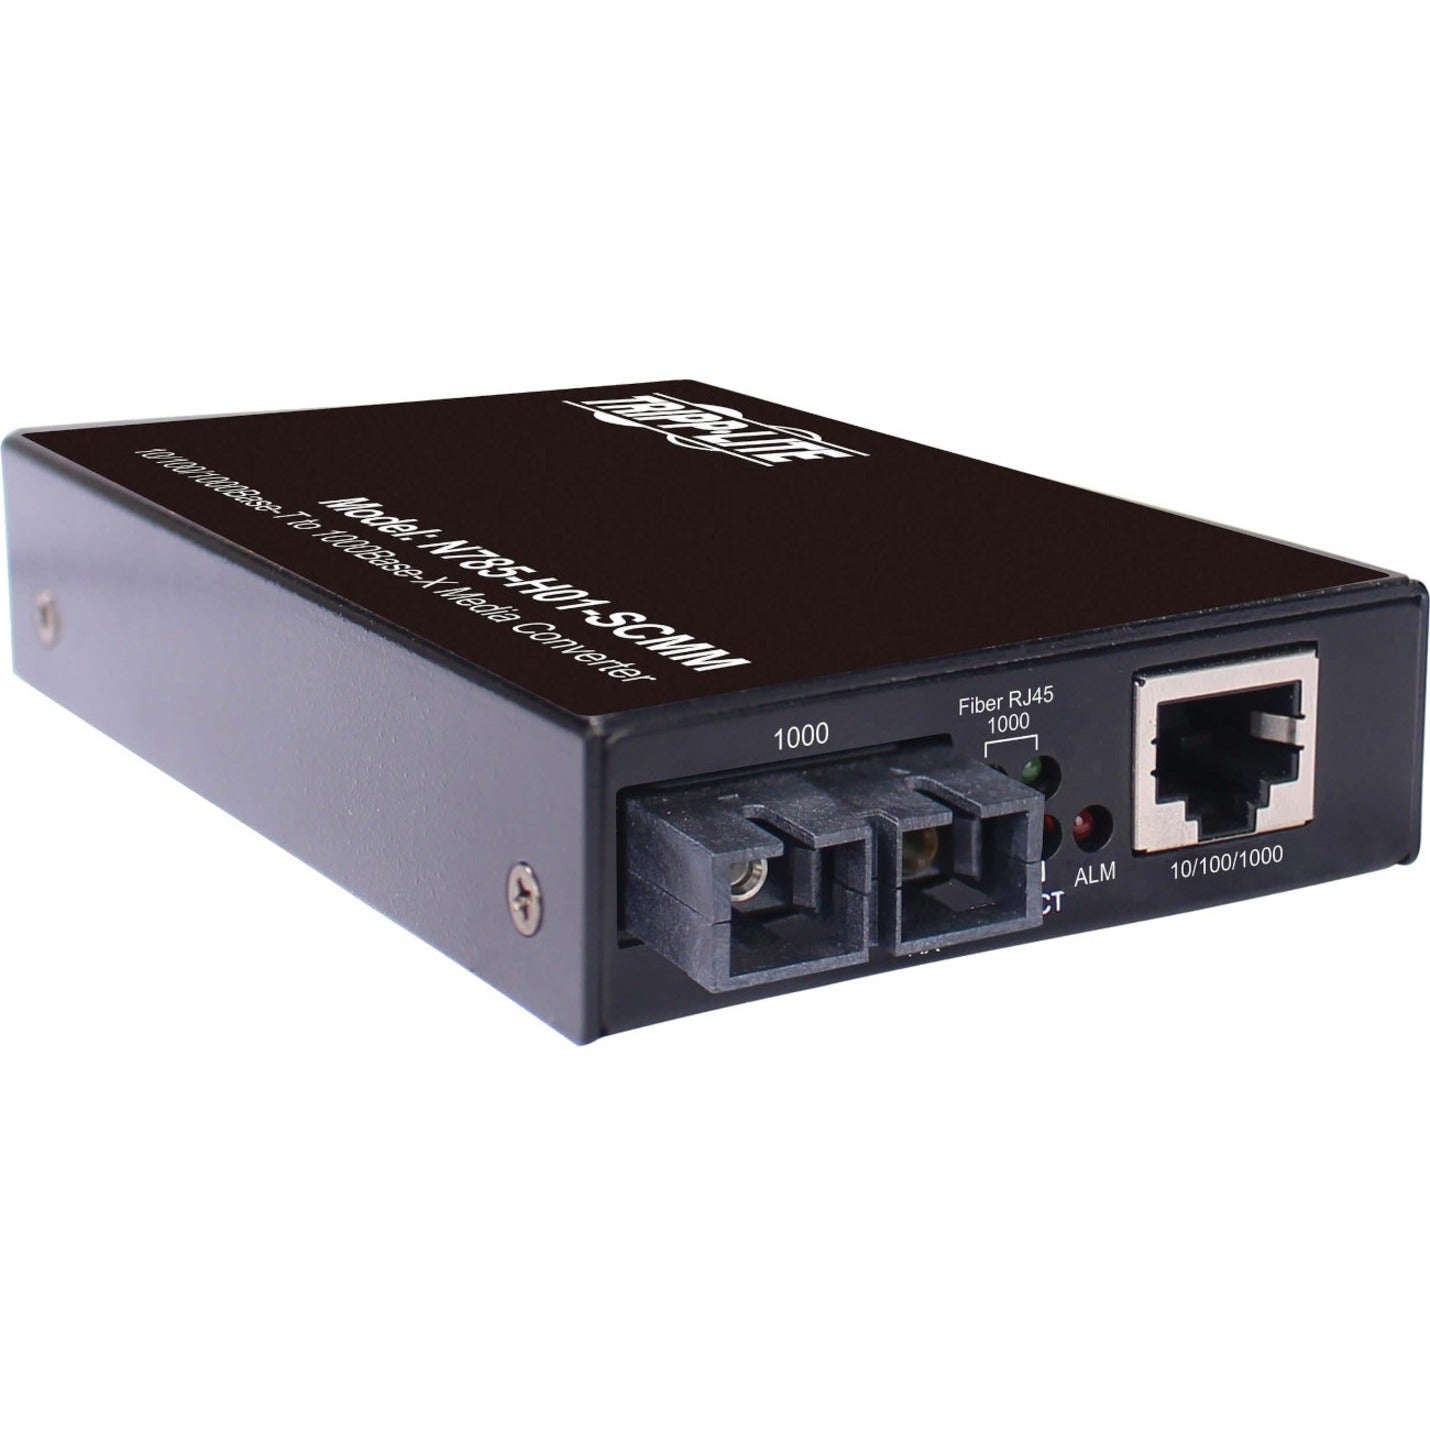 Tripp Lite N785-H01-SCMM Transceiver/Convertisseur de support cuivre Gigabit à fibre multi-mode Distance prise en charge de 1640.42 pi